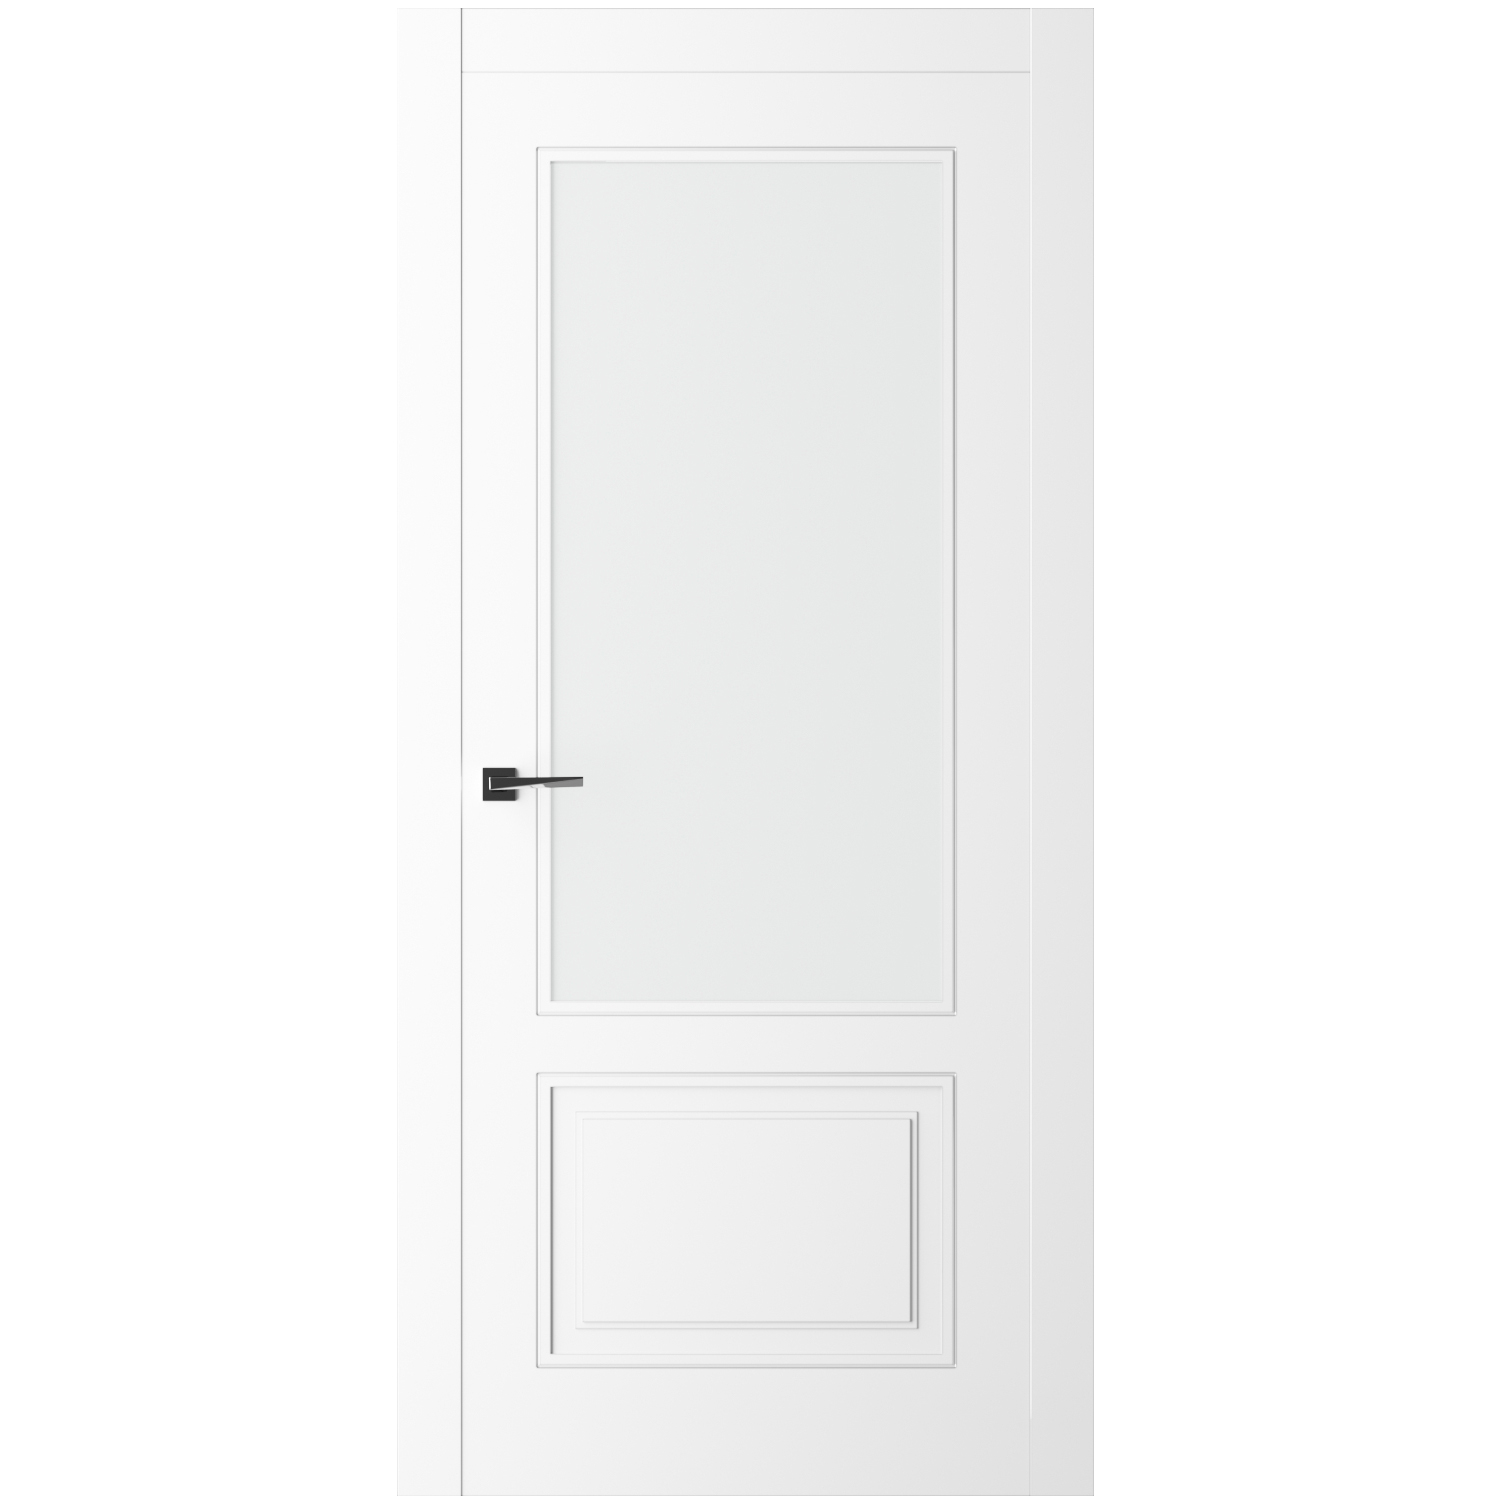 Дверь 1900 600. Межкомнатная дверь "Дельта-2", ПГ, RAL 9001. Двери Некст белый. Калевочные двери что это такое. Плоские фрезерованные двери эмаль.